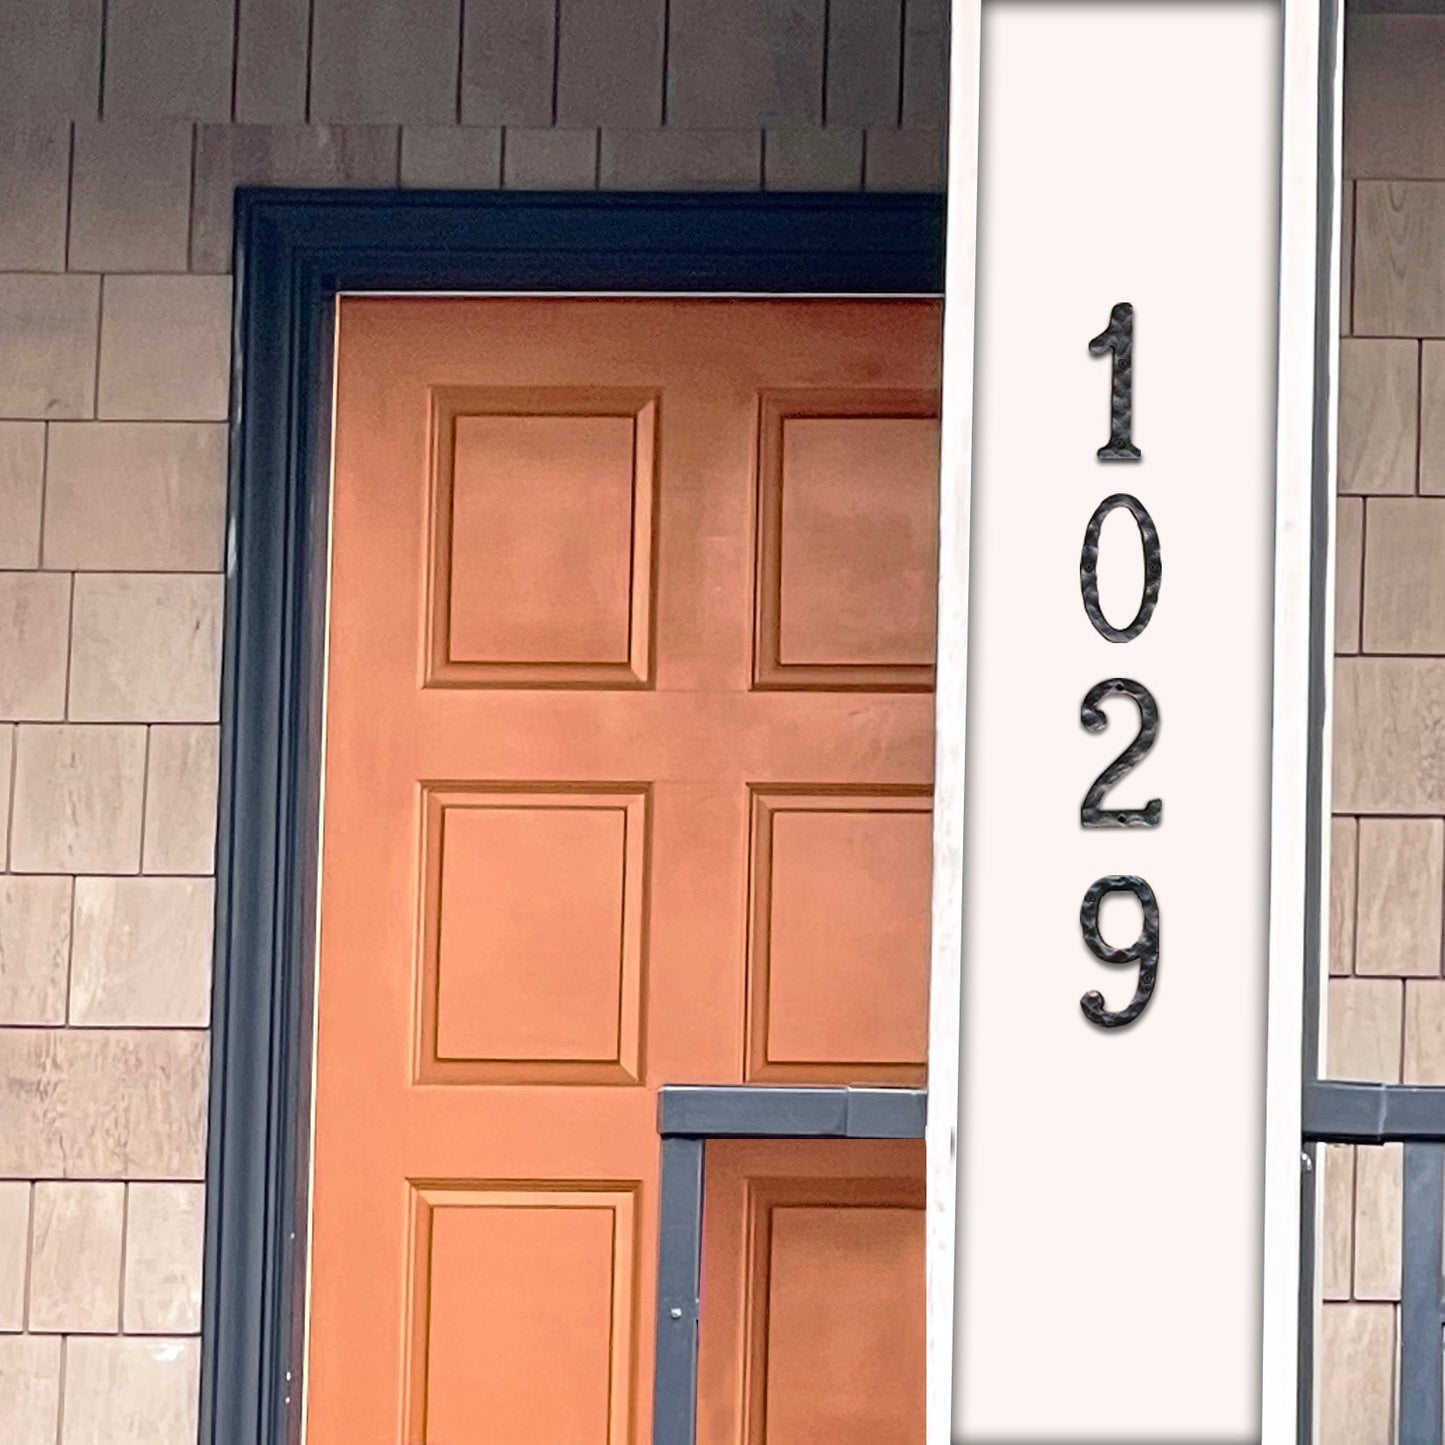 Numéro d'adresse de maison en fonte au fini rustique pour l'extérieur ou l'intérieur, numéro de boîte aux lettres décoratif pour l'extérieur, protection maximale contre la rouille, noir, 2, 5,5 pouces,